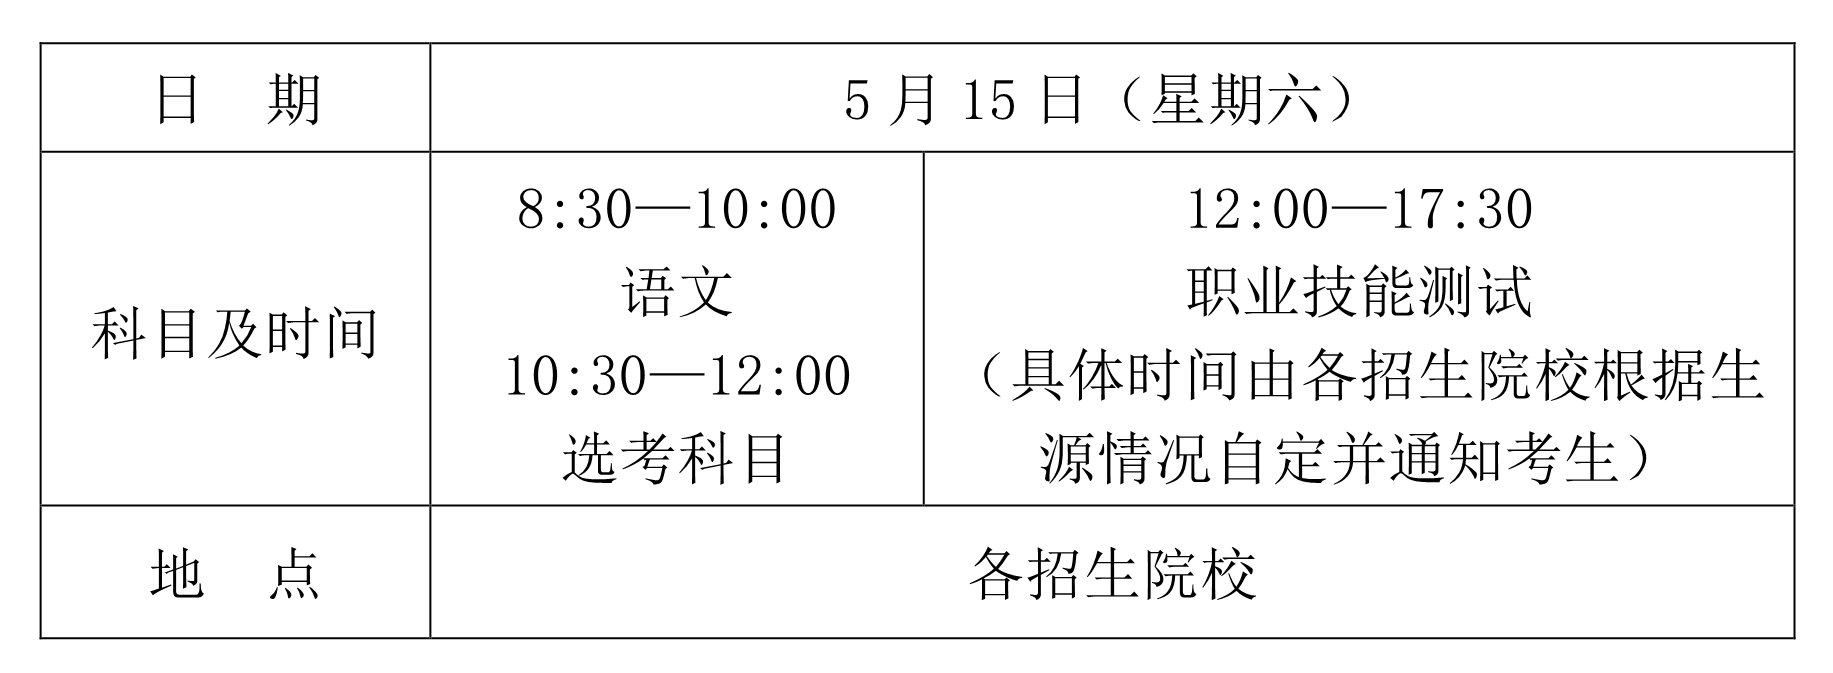 2021海南省高职对口单独招生考试时间